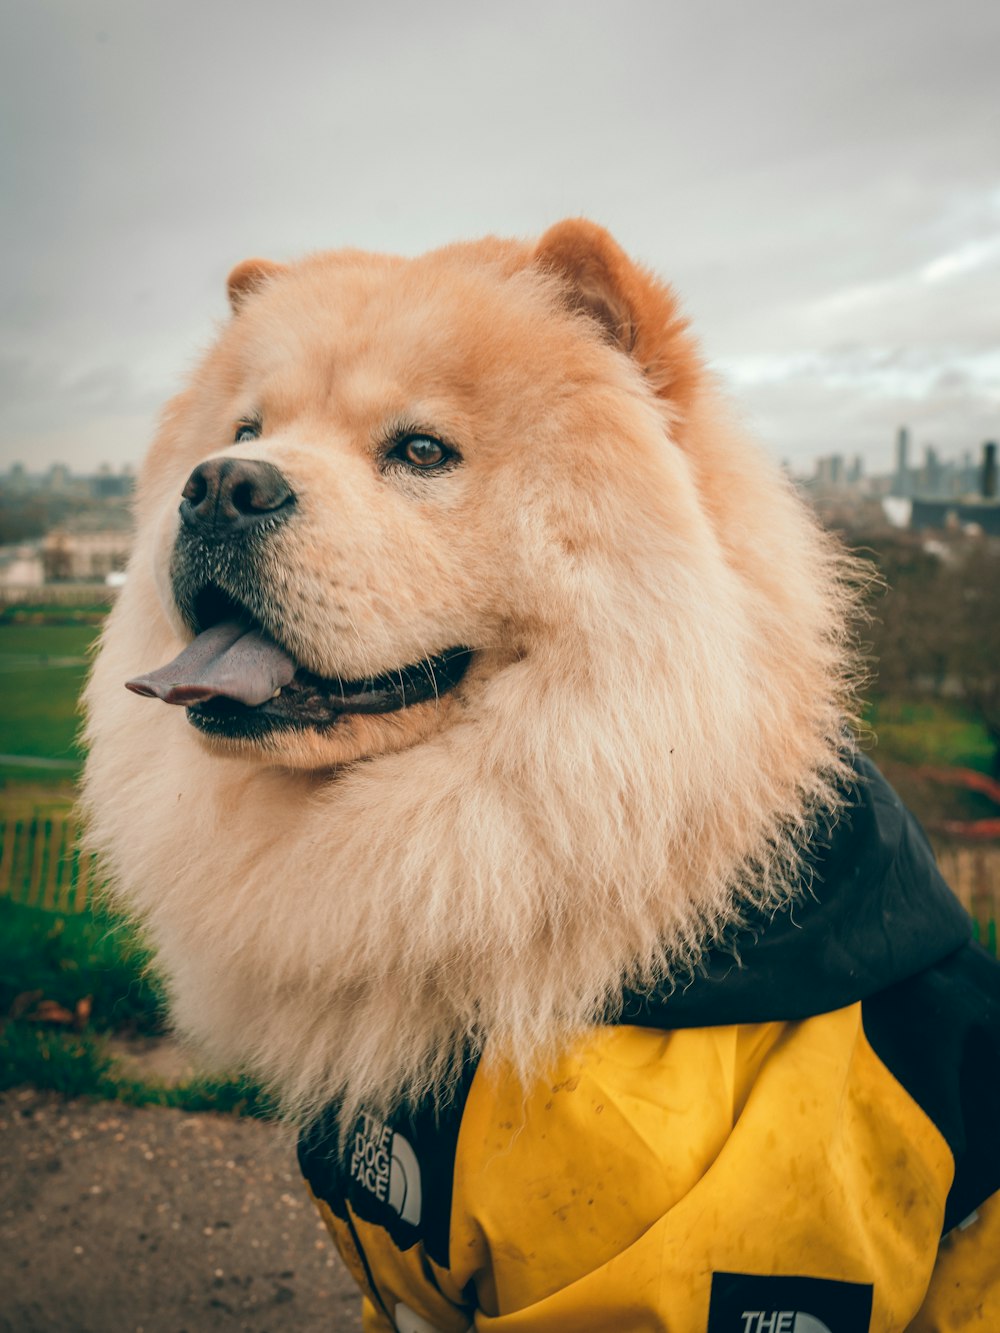 검은 색과 노란색 재킷을 입은 갈색 긴 코팅 개